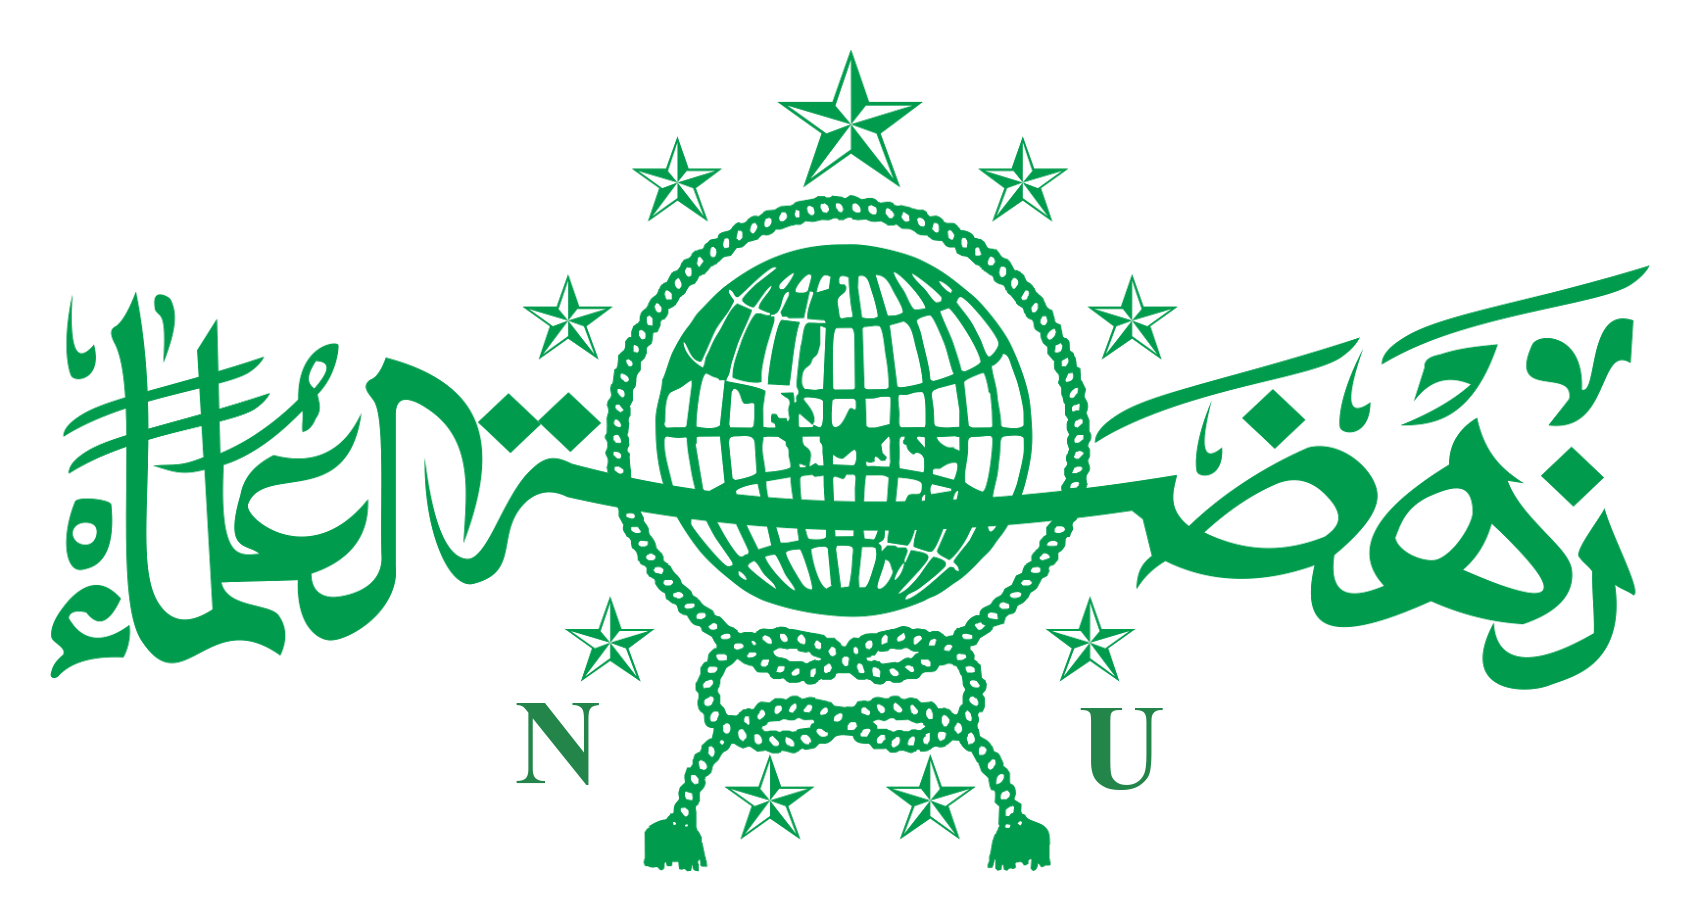 Logo Nahdlatul Ulama Hd